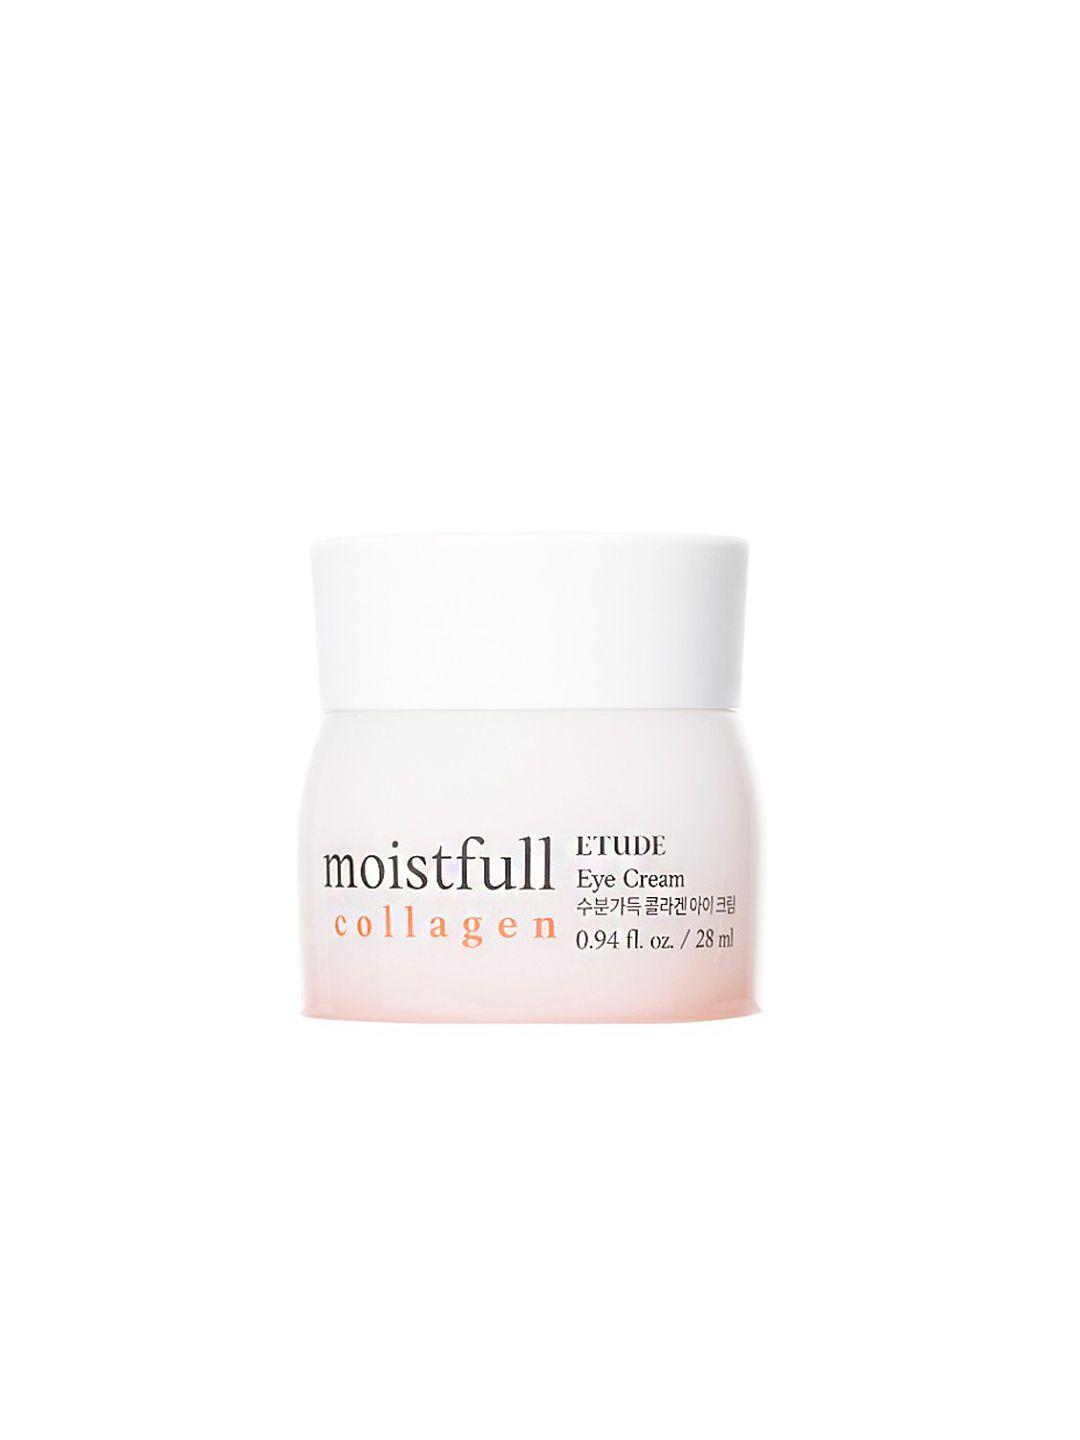 etude moistfull collagen eye cream for instant moisture recharge - 28ml